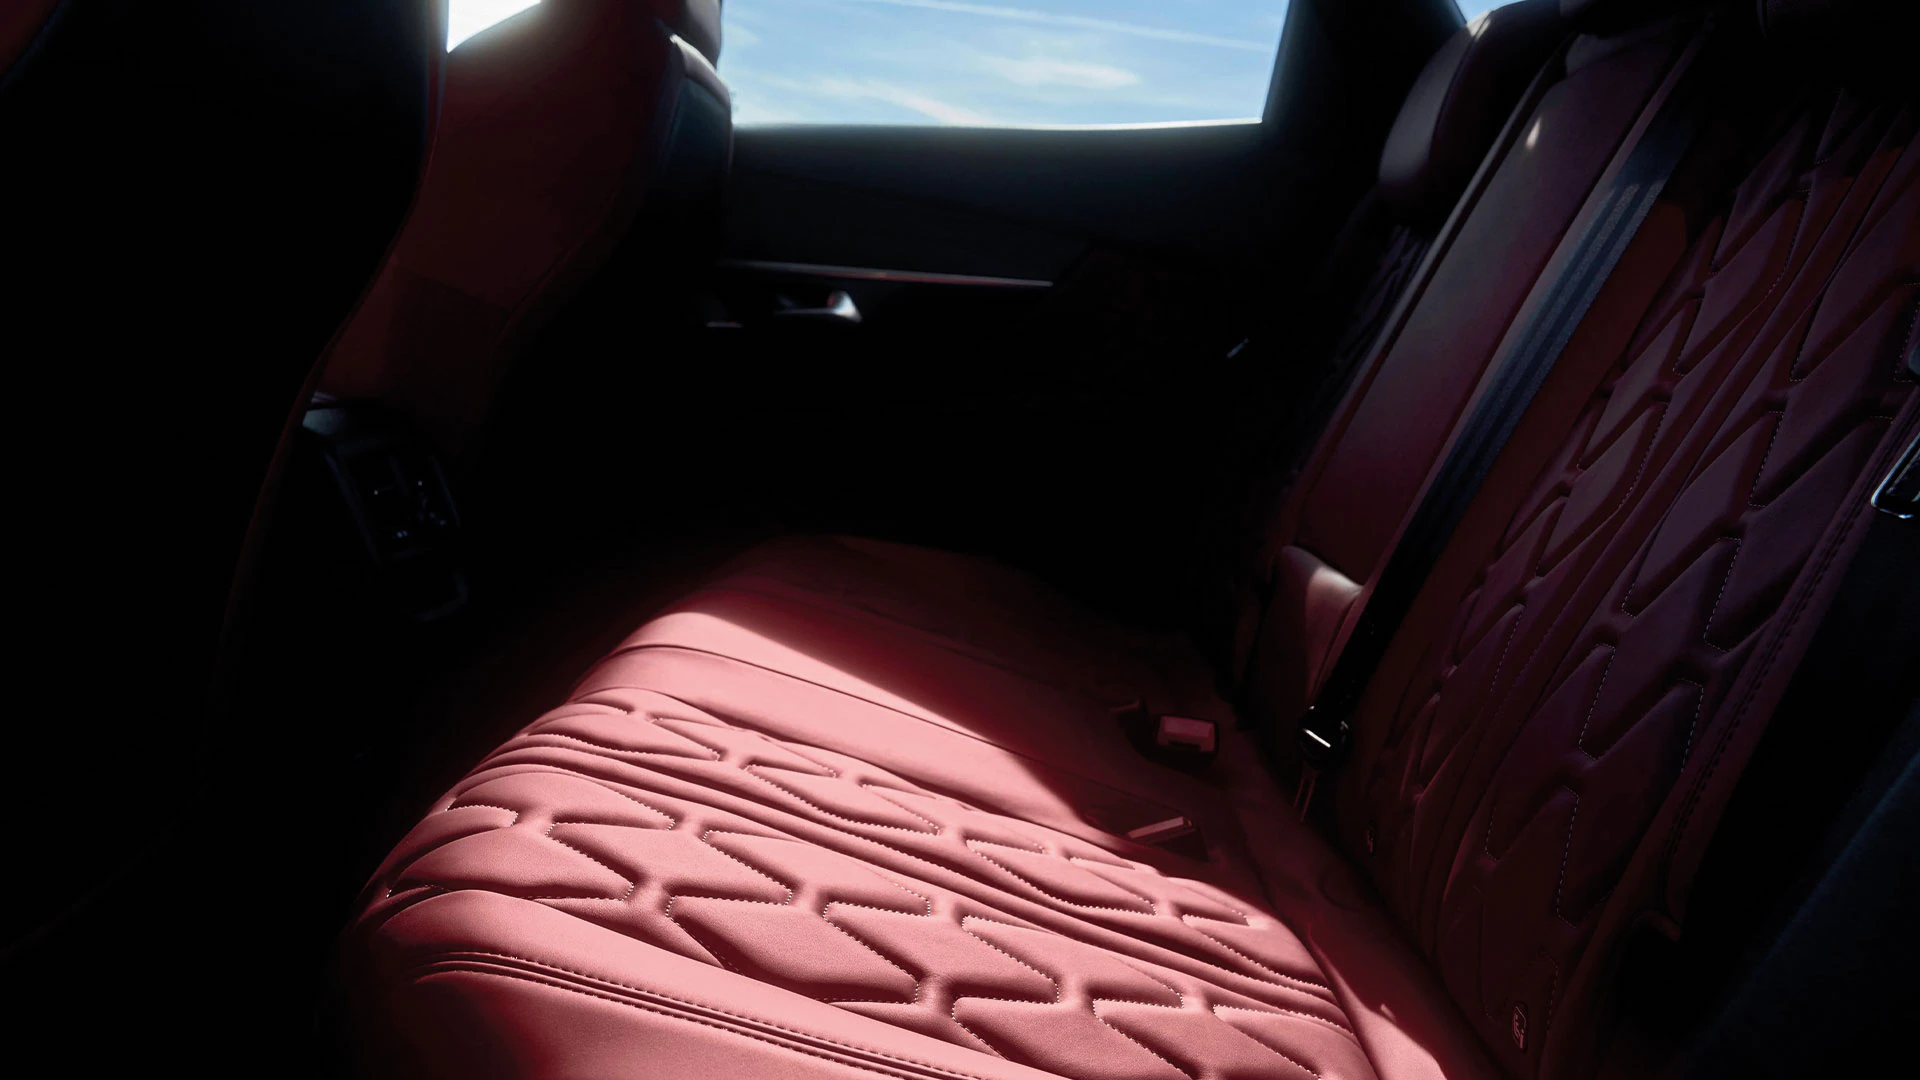 Peugeot 3008 interior - Rear Seats